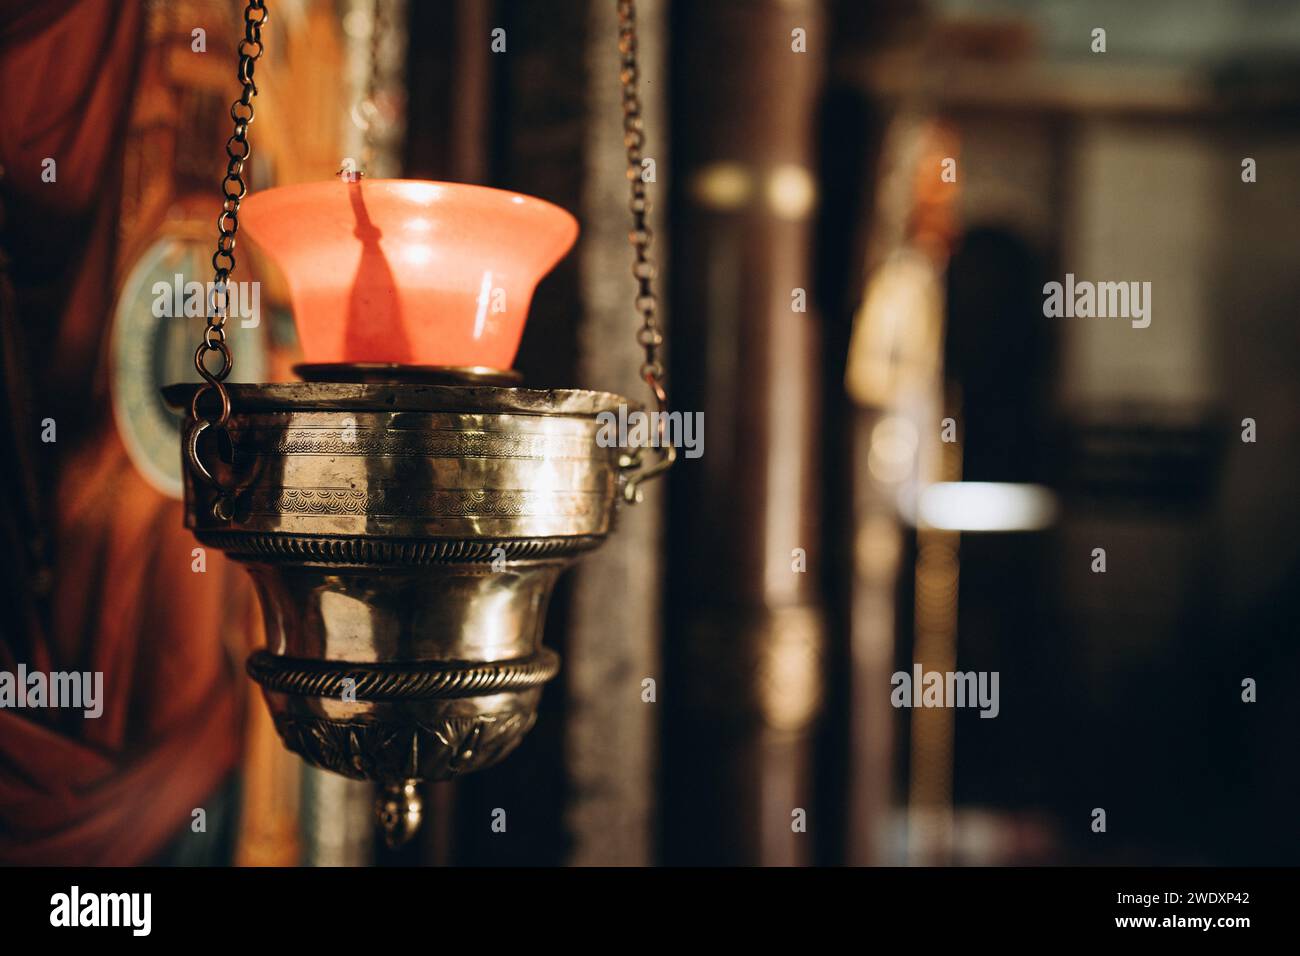 la lampe icône dans l'église est accrochée près de l'icône. Photo de haute qualité Banque D'Images